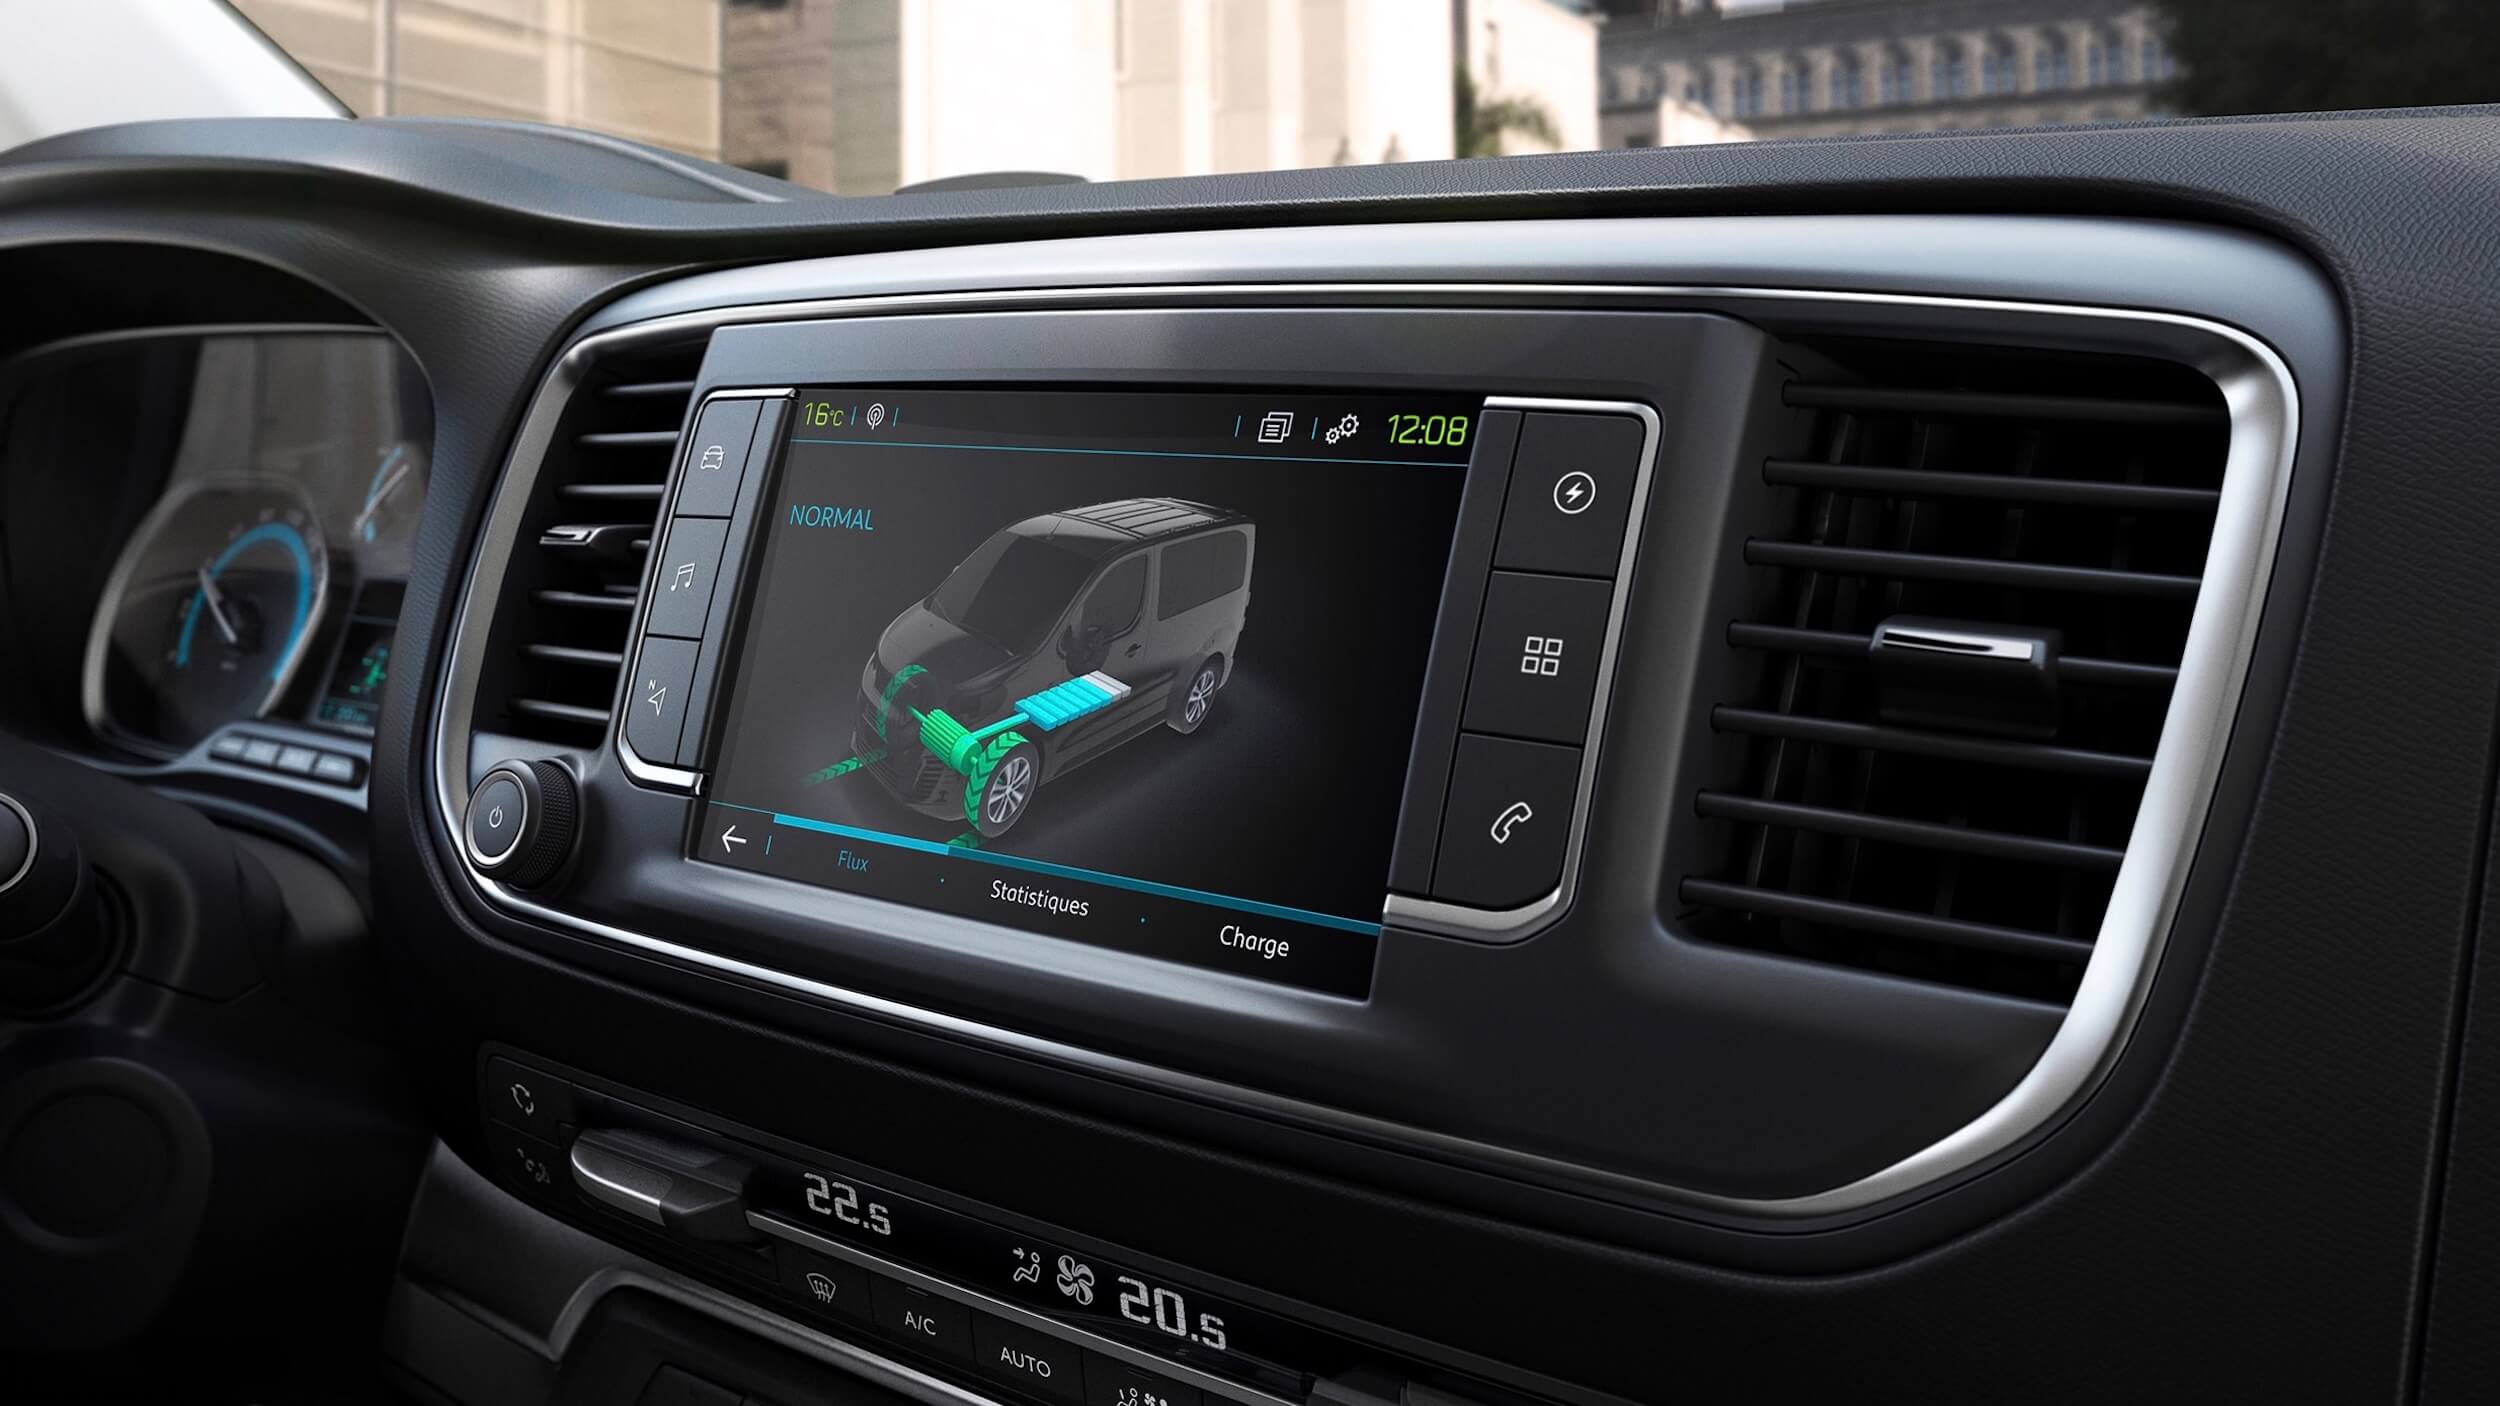 Peugeot e-Traveller infotainment screen